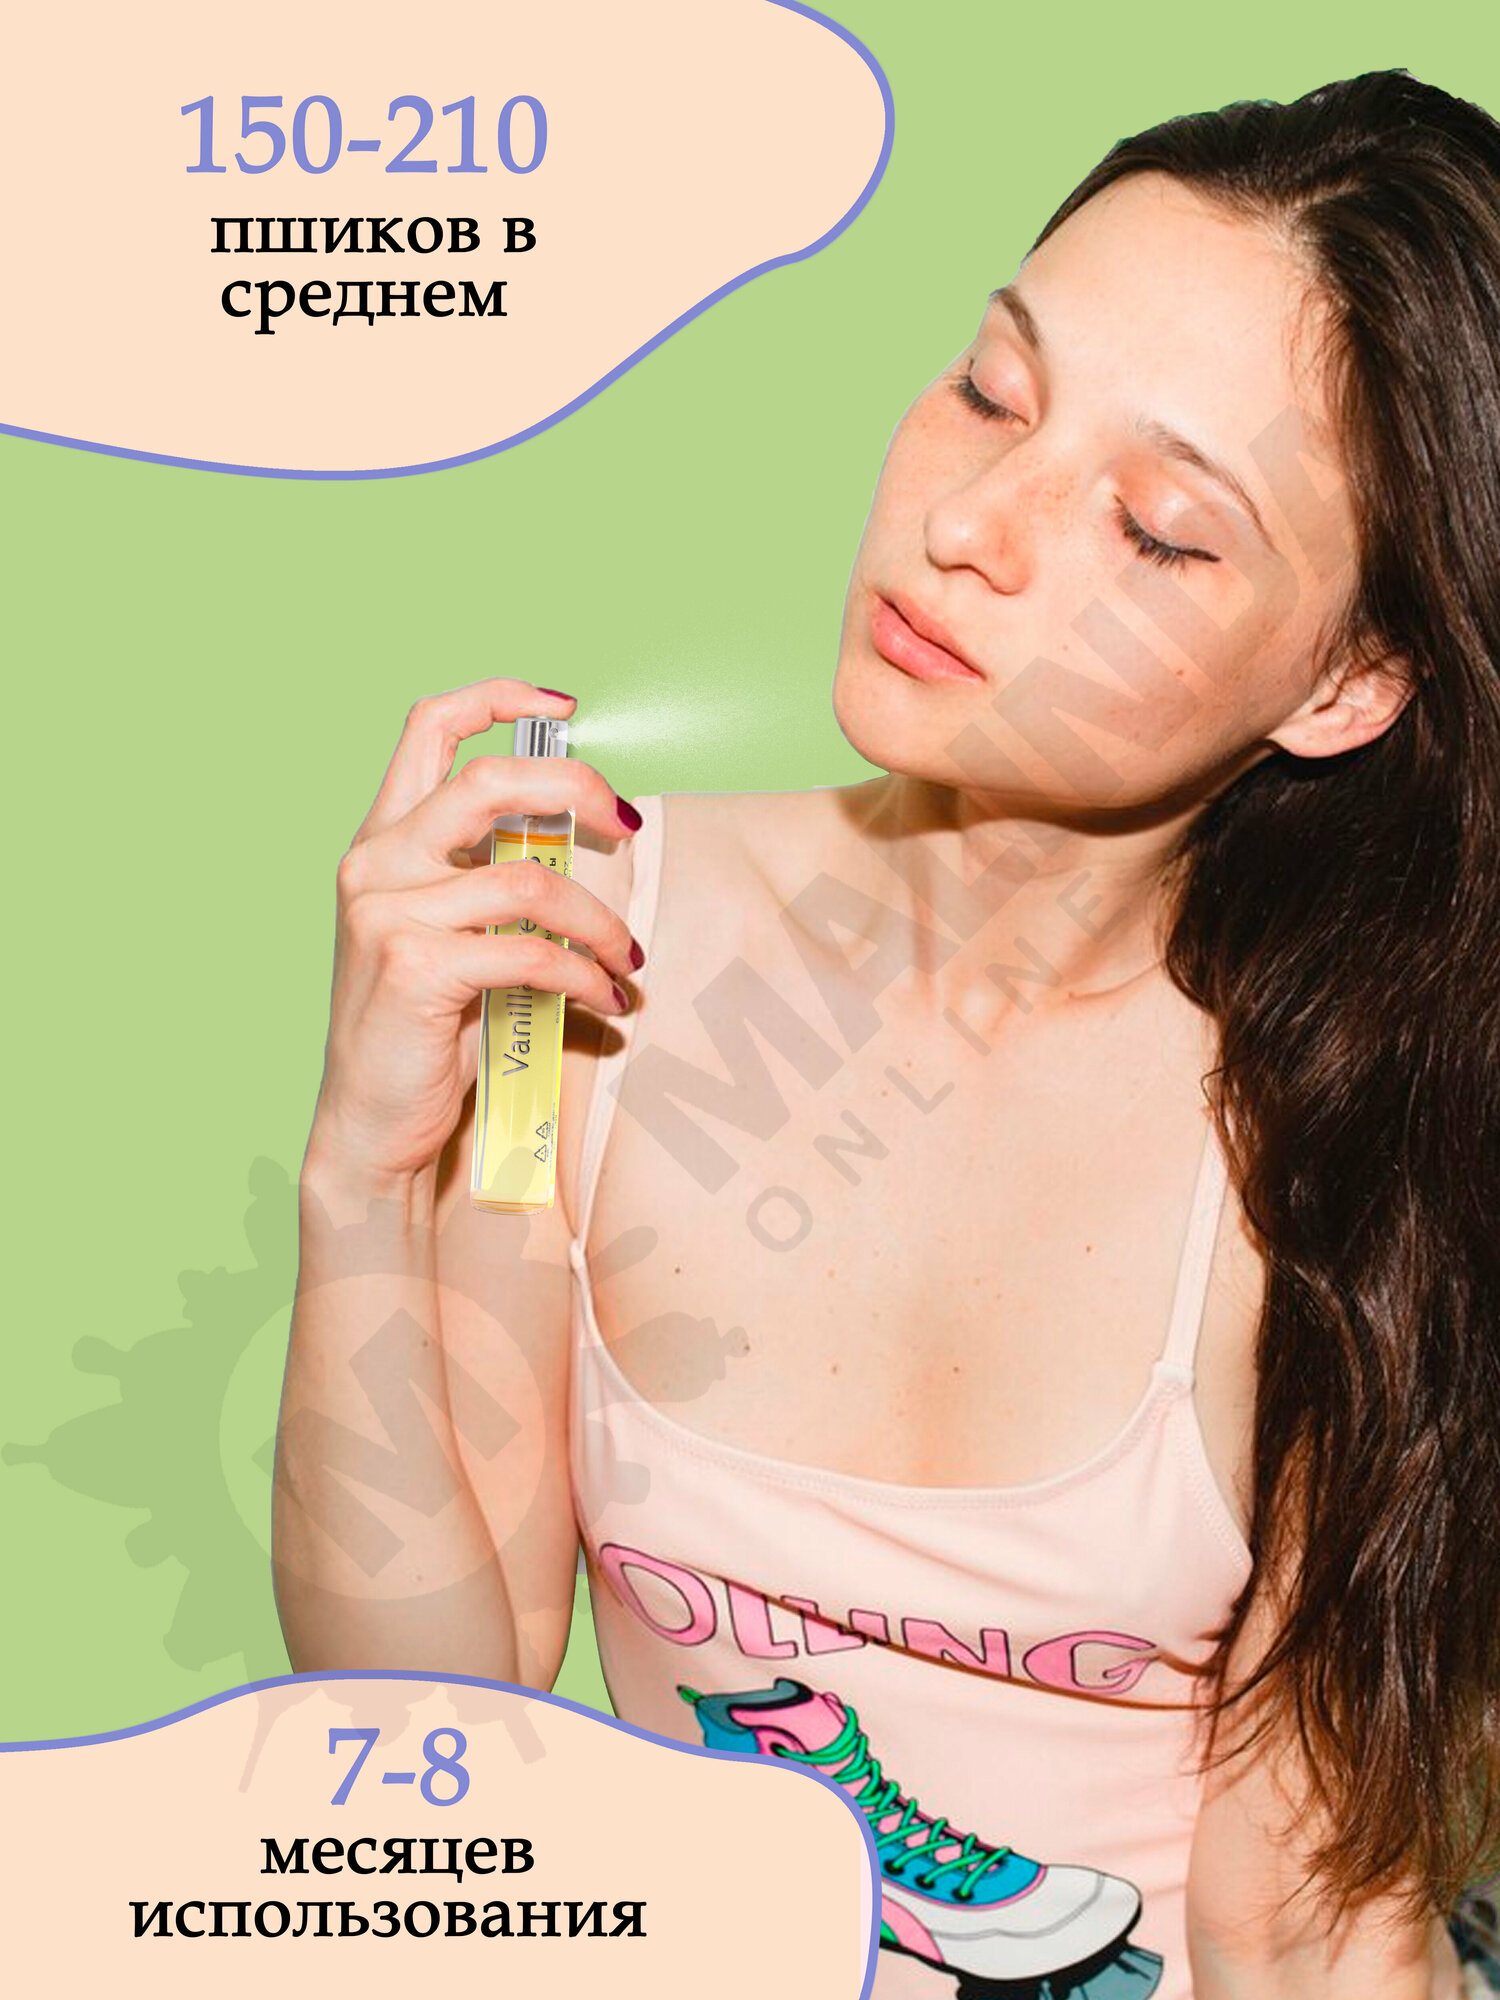 ИН100#грамм PARFUM Ванильные мечты Женская парфюмерная вода 30 мл